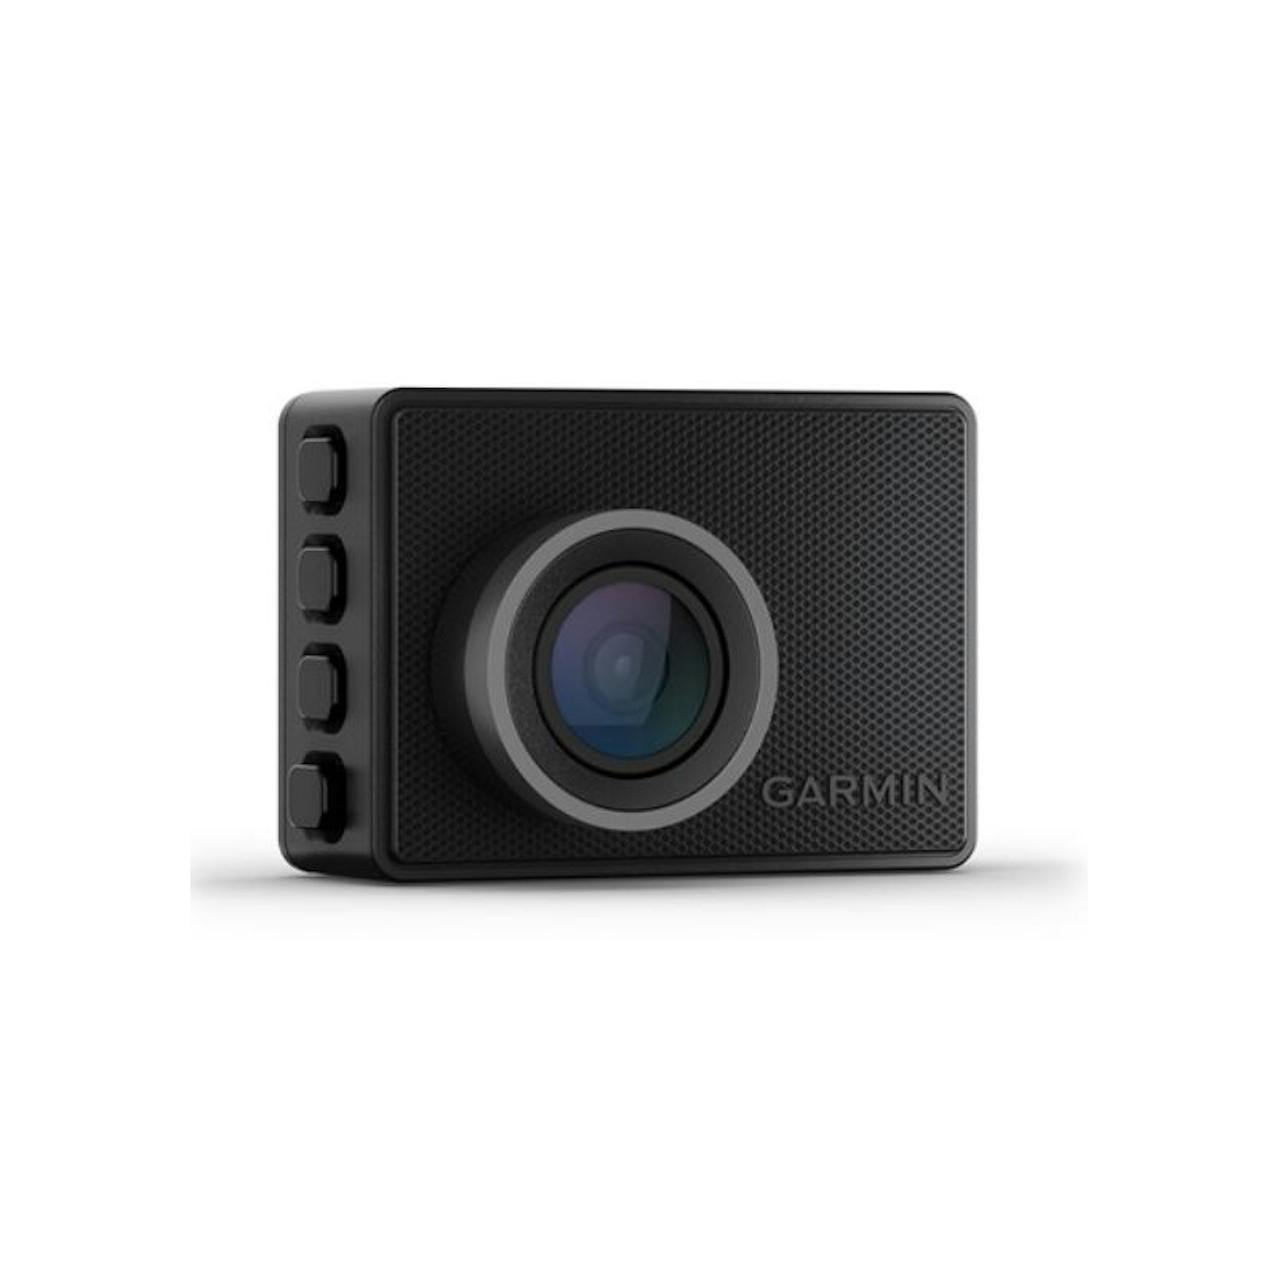 Garmin Dash Cam 55 Review: Standout Quality